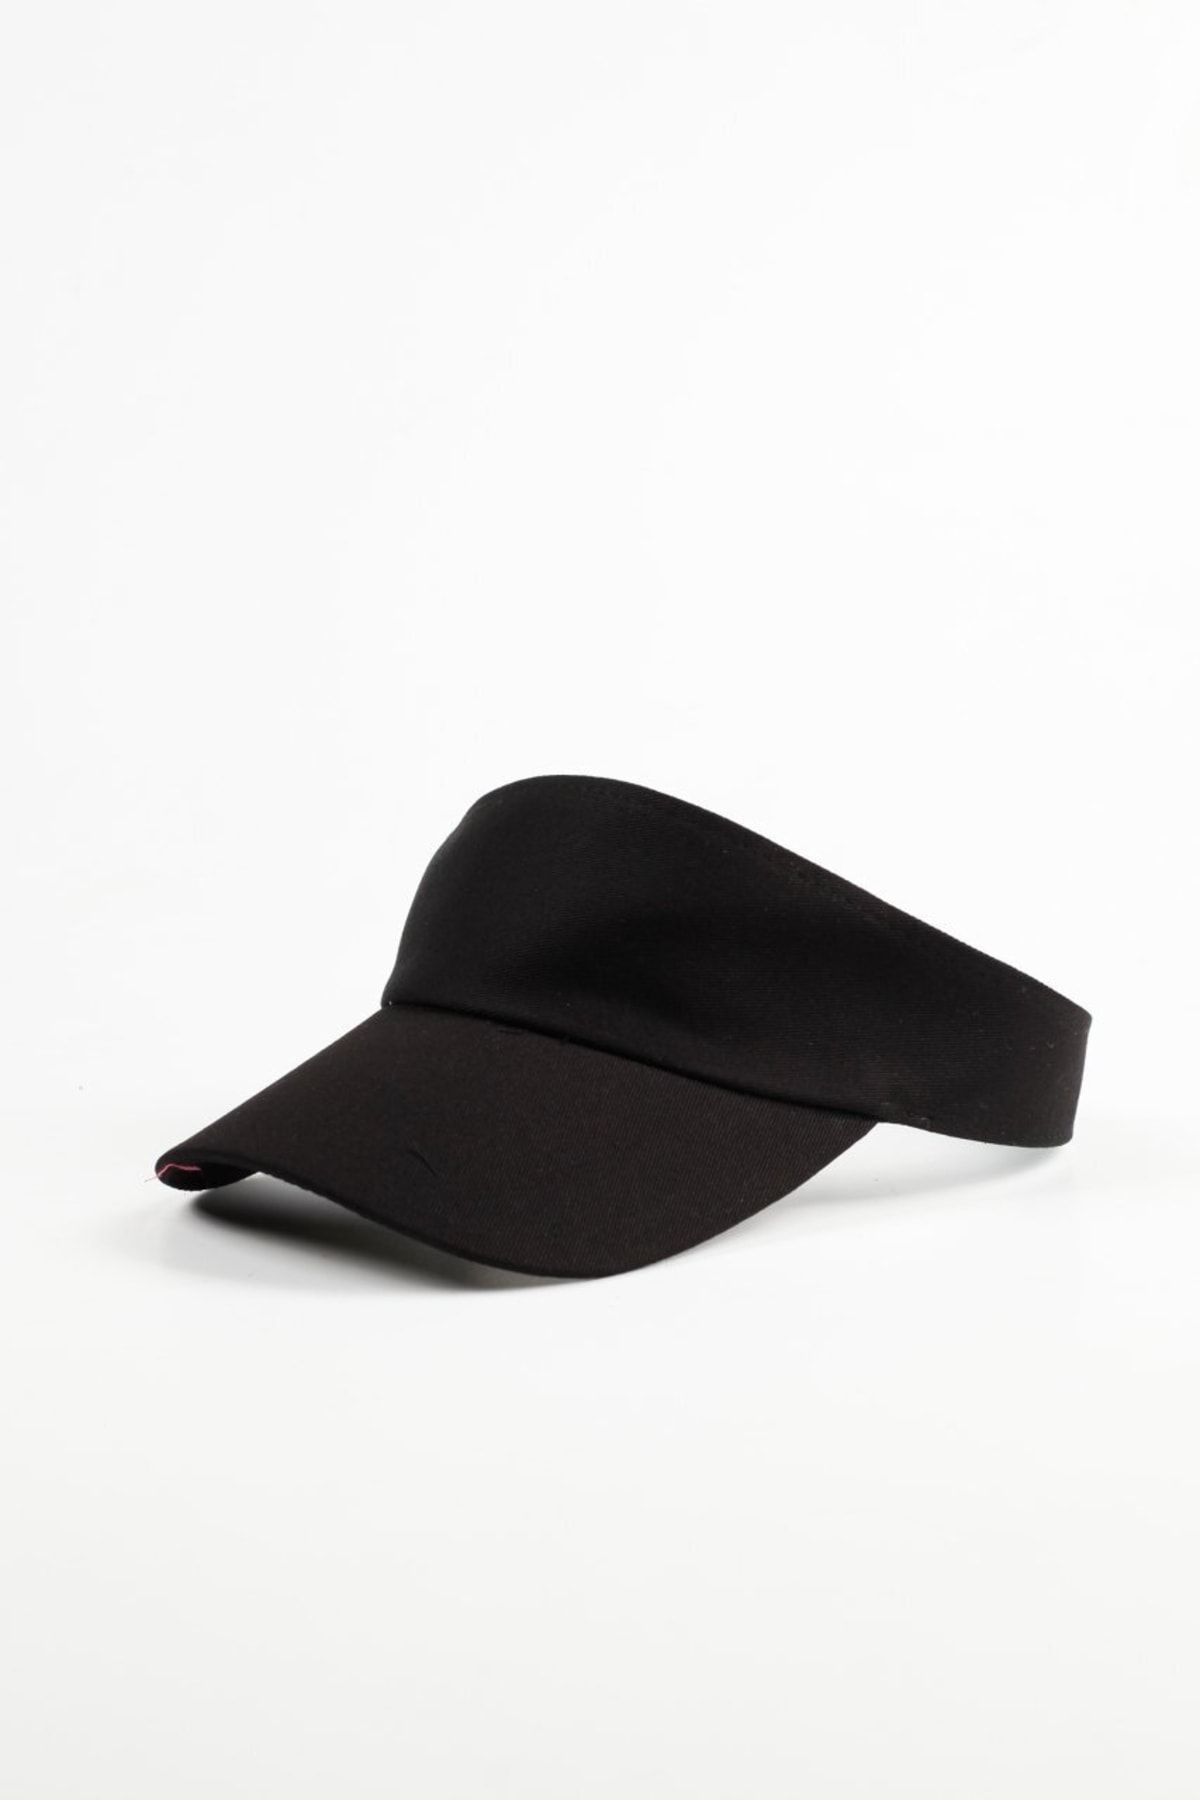 Kapin Siyah Tenis Şapkası - Vizör Şapka